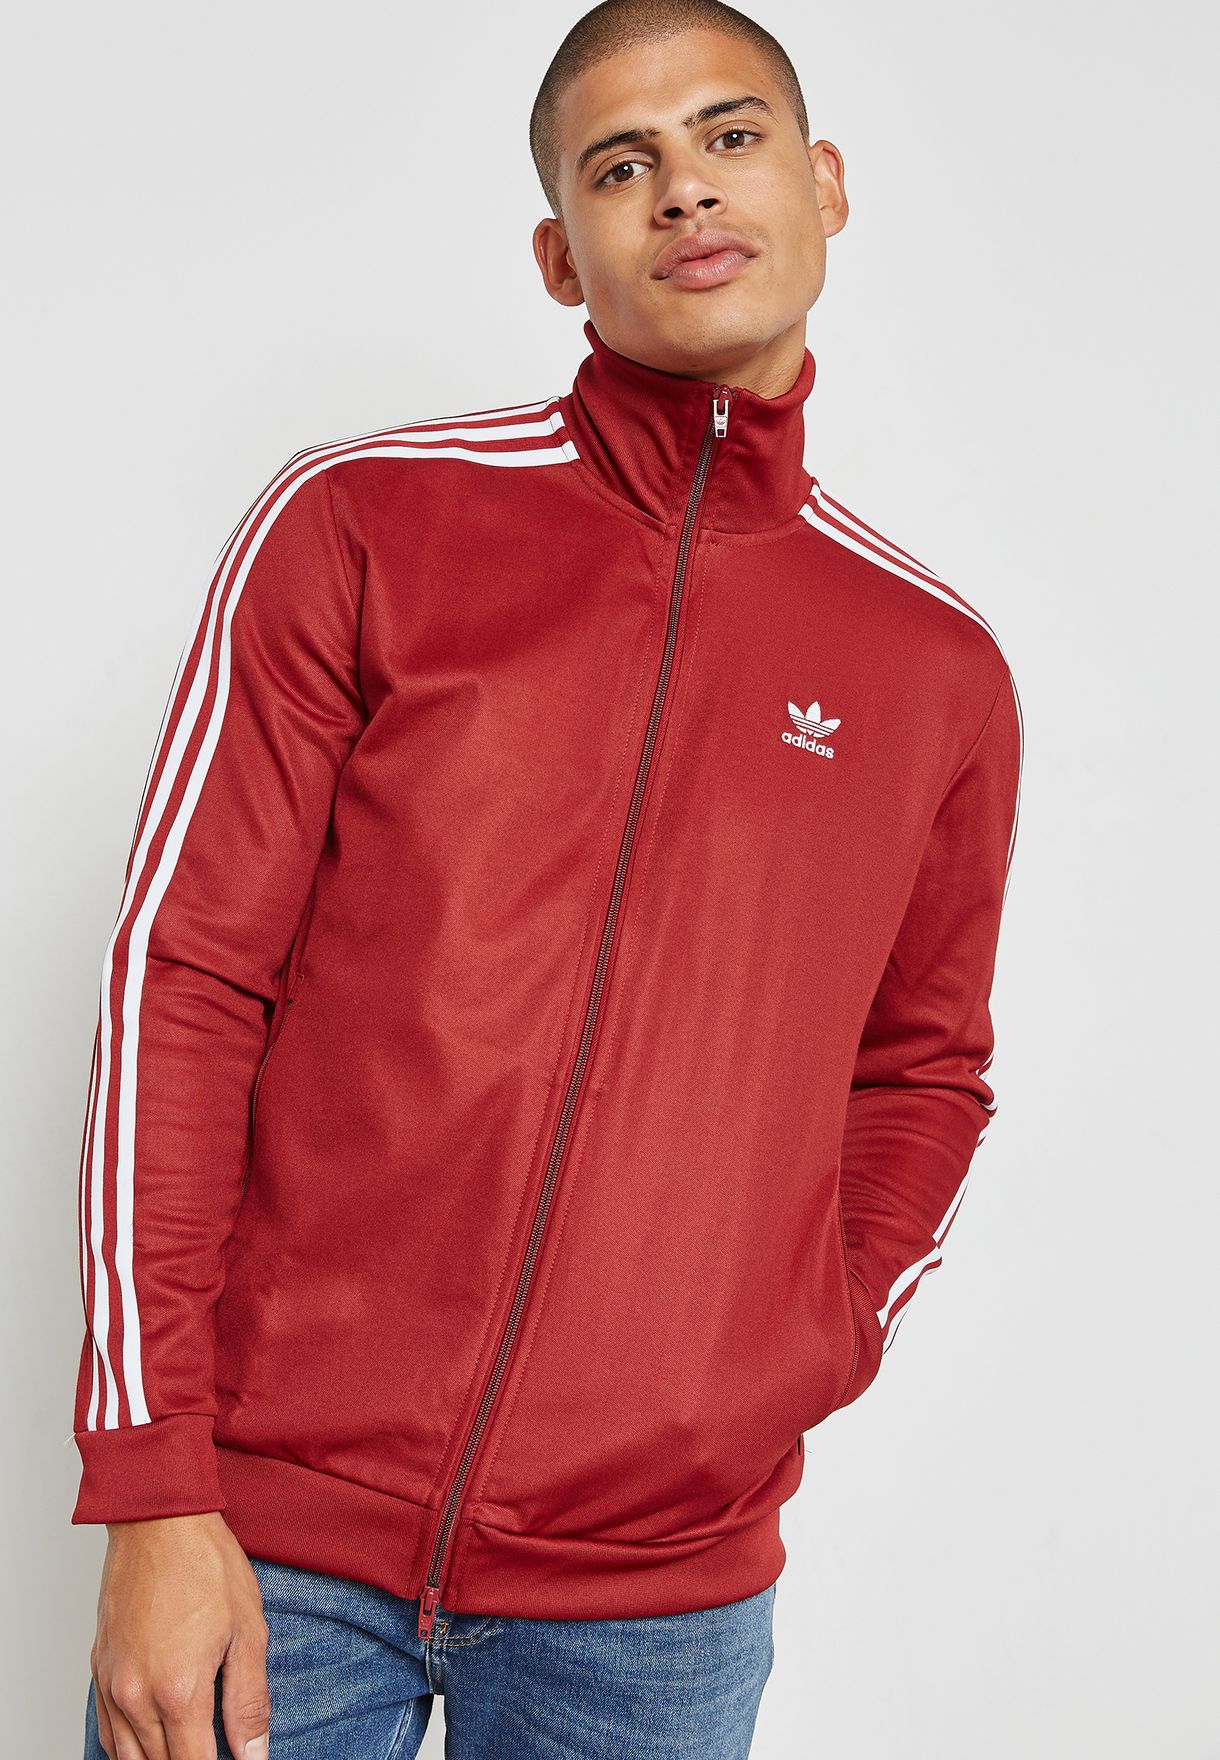 adidas beckenbauer track jacket red